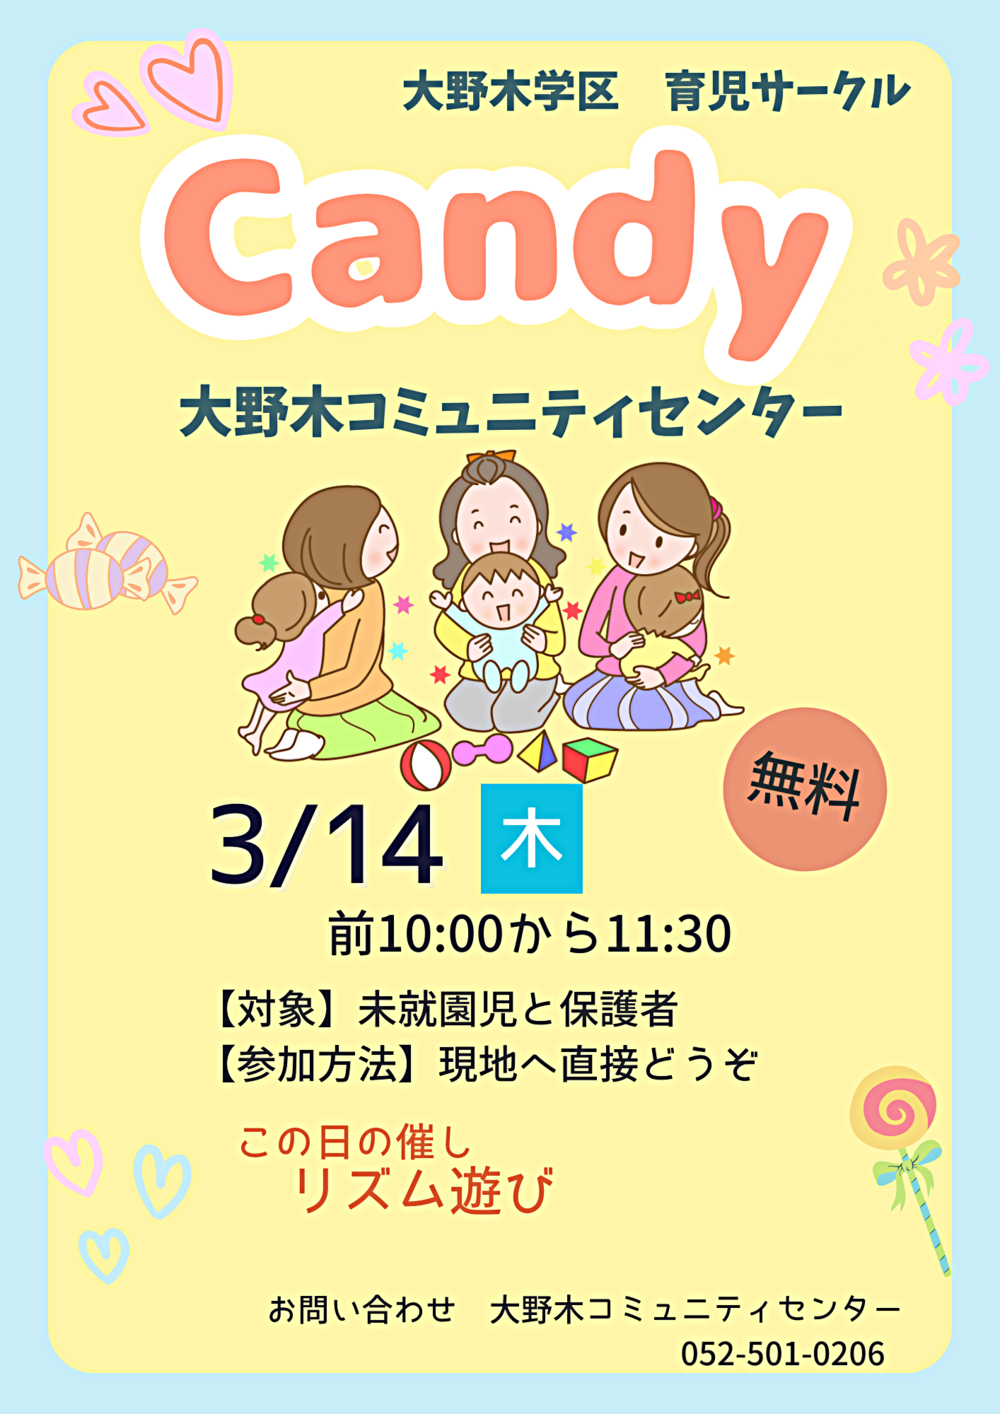 大野木学区育児サークル「Candy」